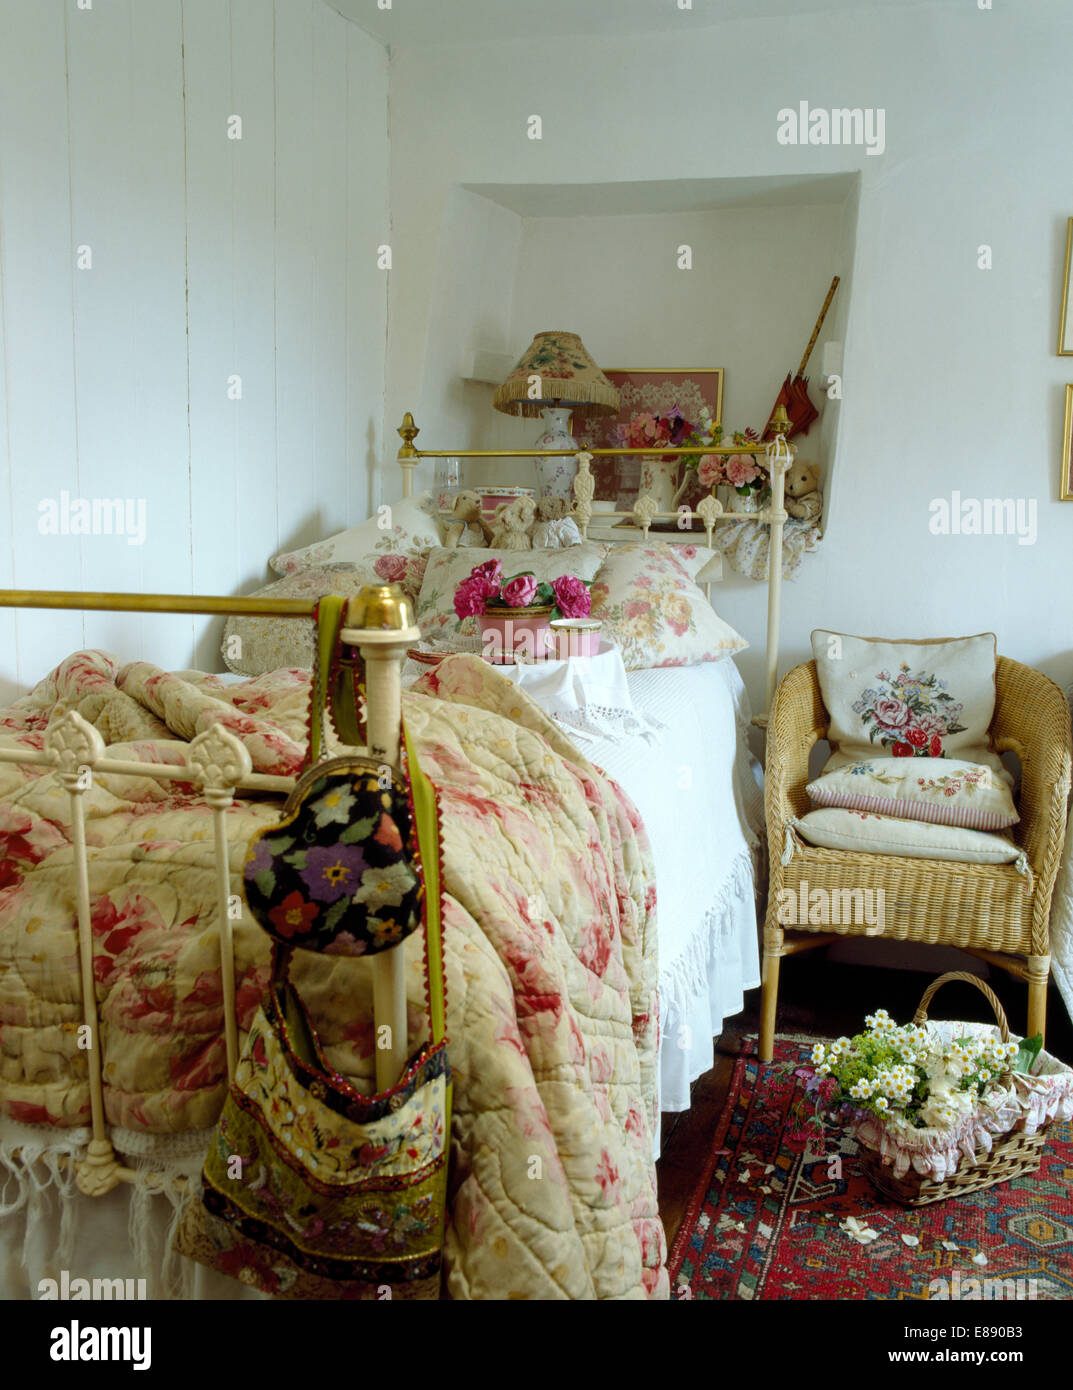 Ancienne courtepointe à motifs de roses et de fleurs coussins sur un lit en fer forgé en chambre cottage Banque D'Images